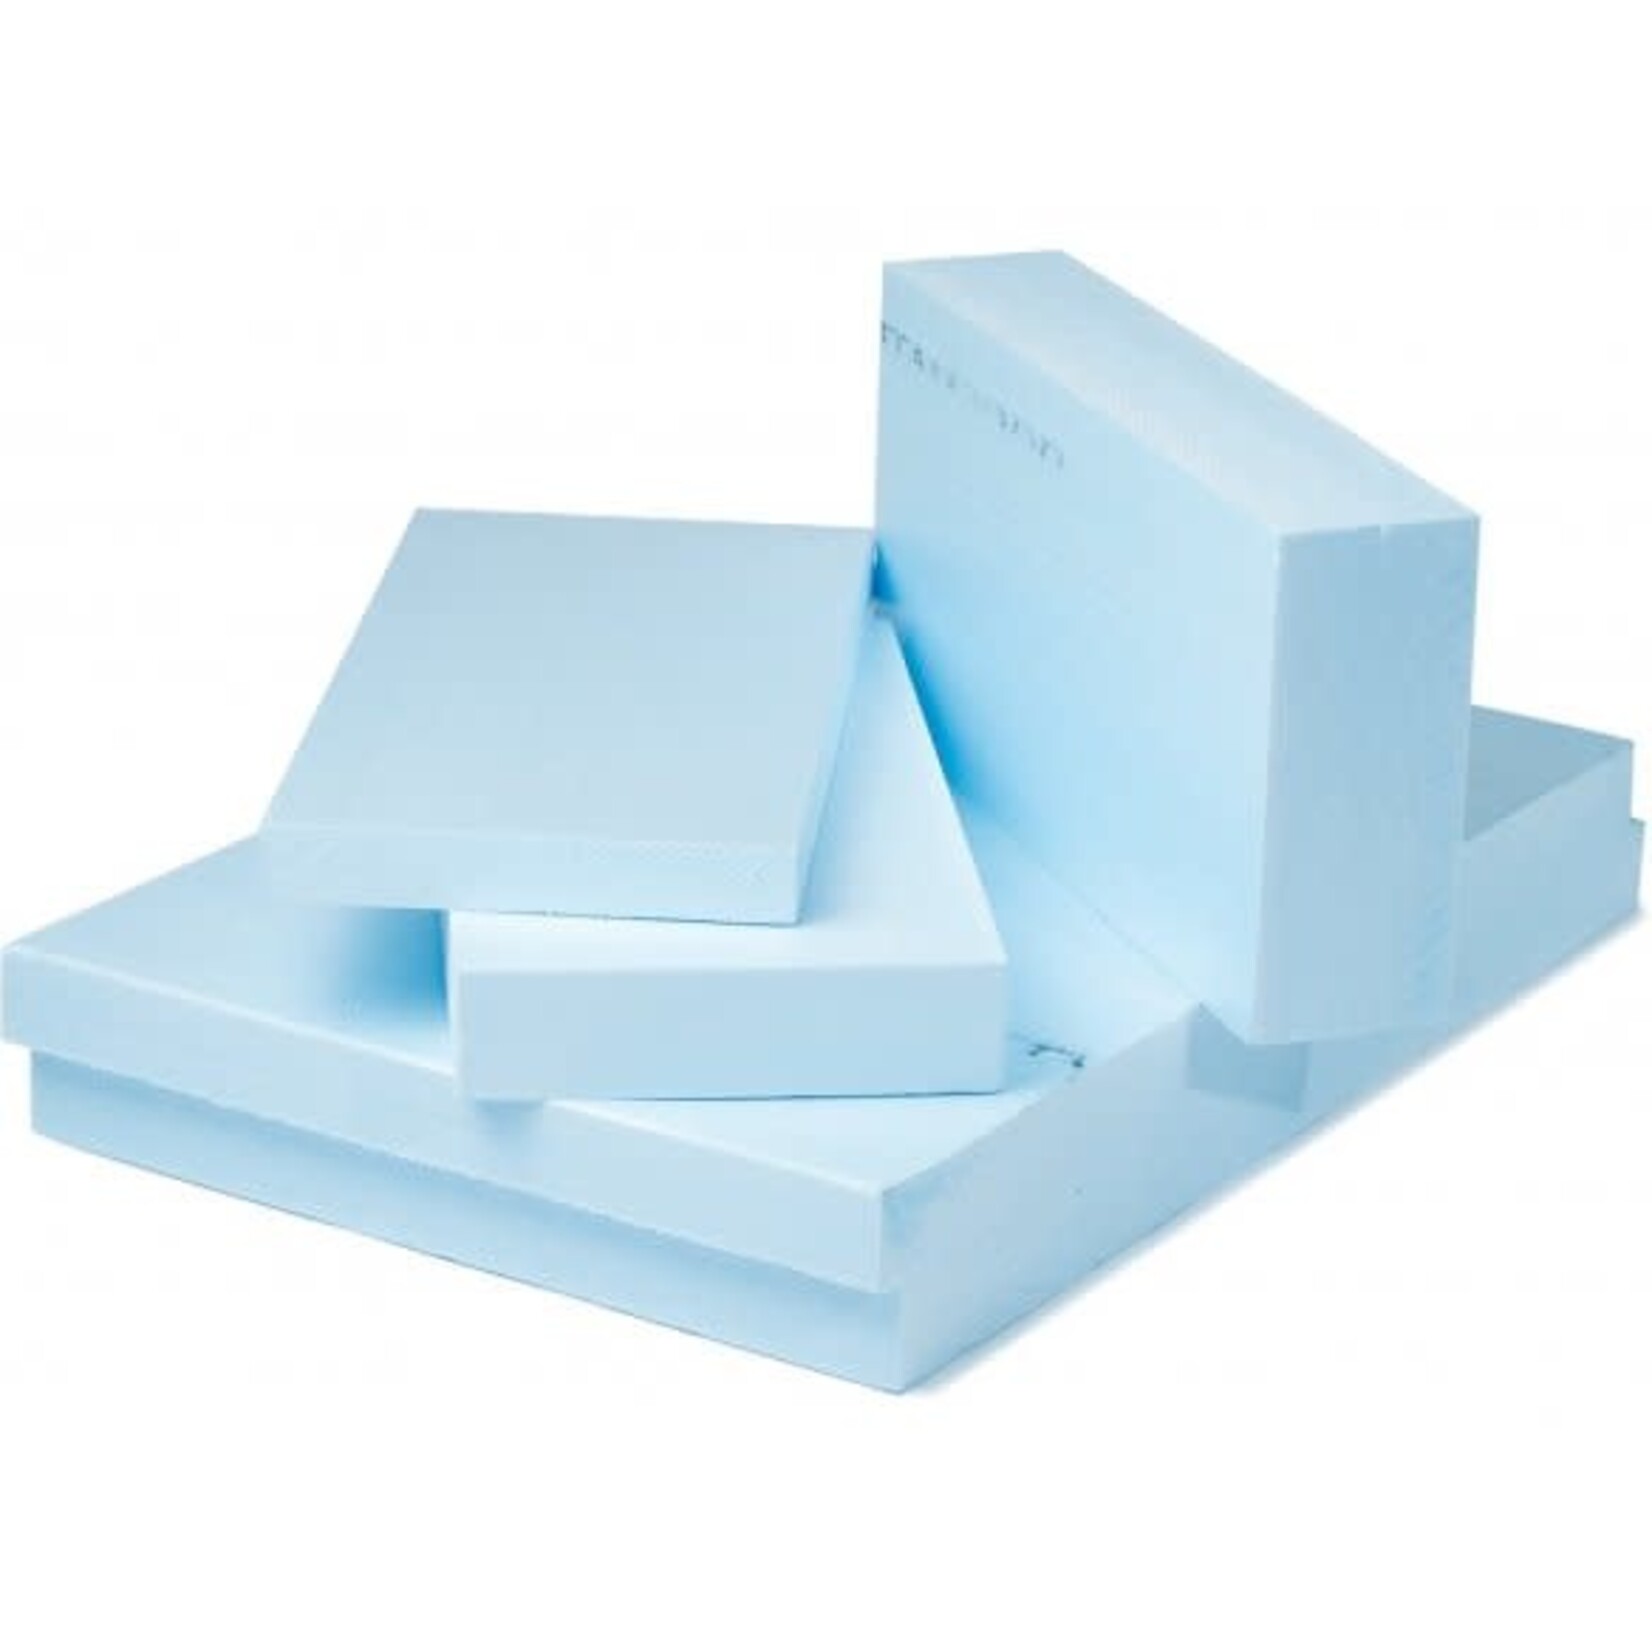 Foam Sales Group Polystyrene Foam Block Blue Small-Long- Approx 12''x4''x2 (DOW)